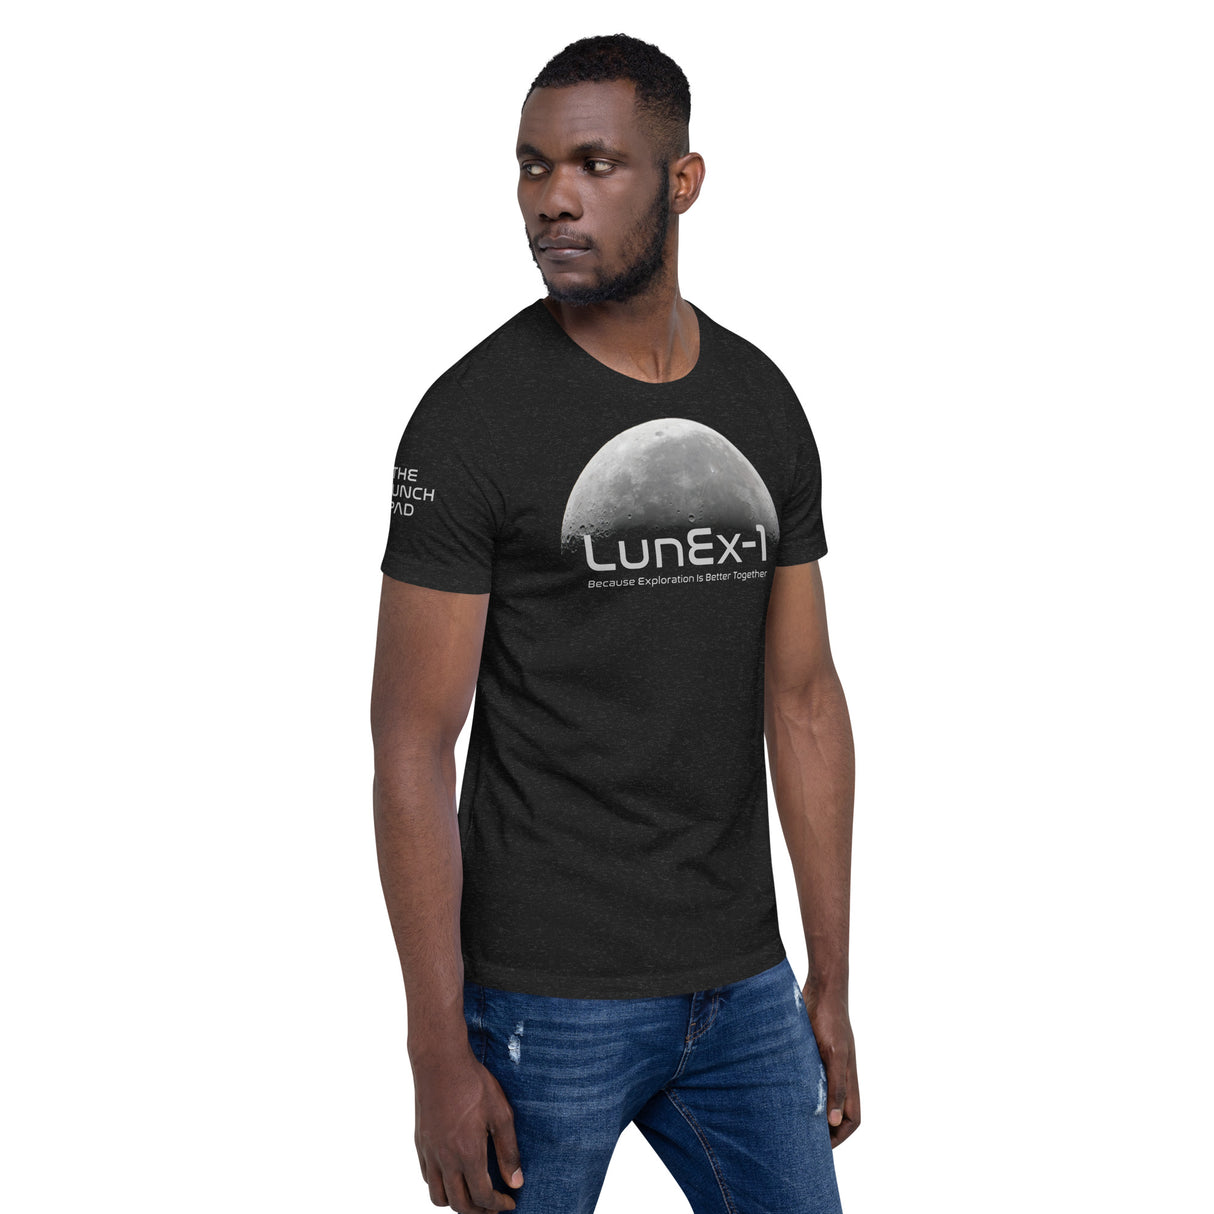 LunEx-1 Moon Tee